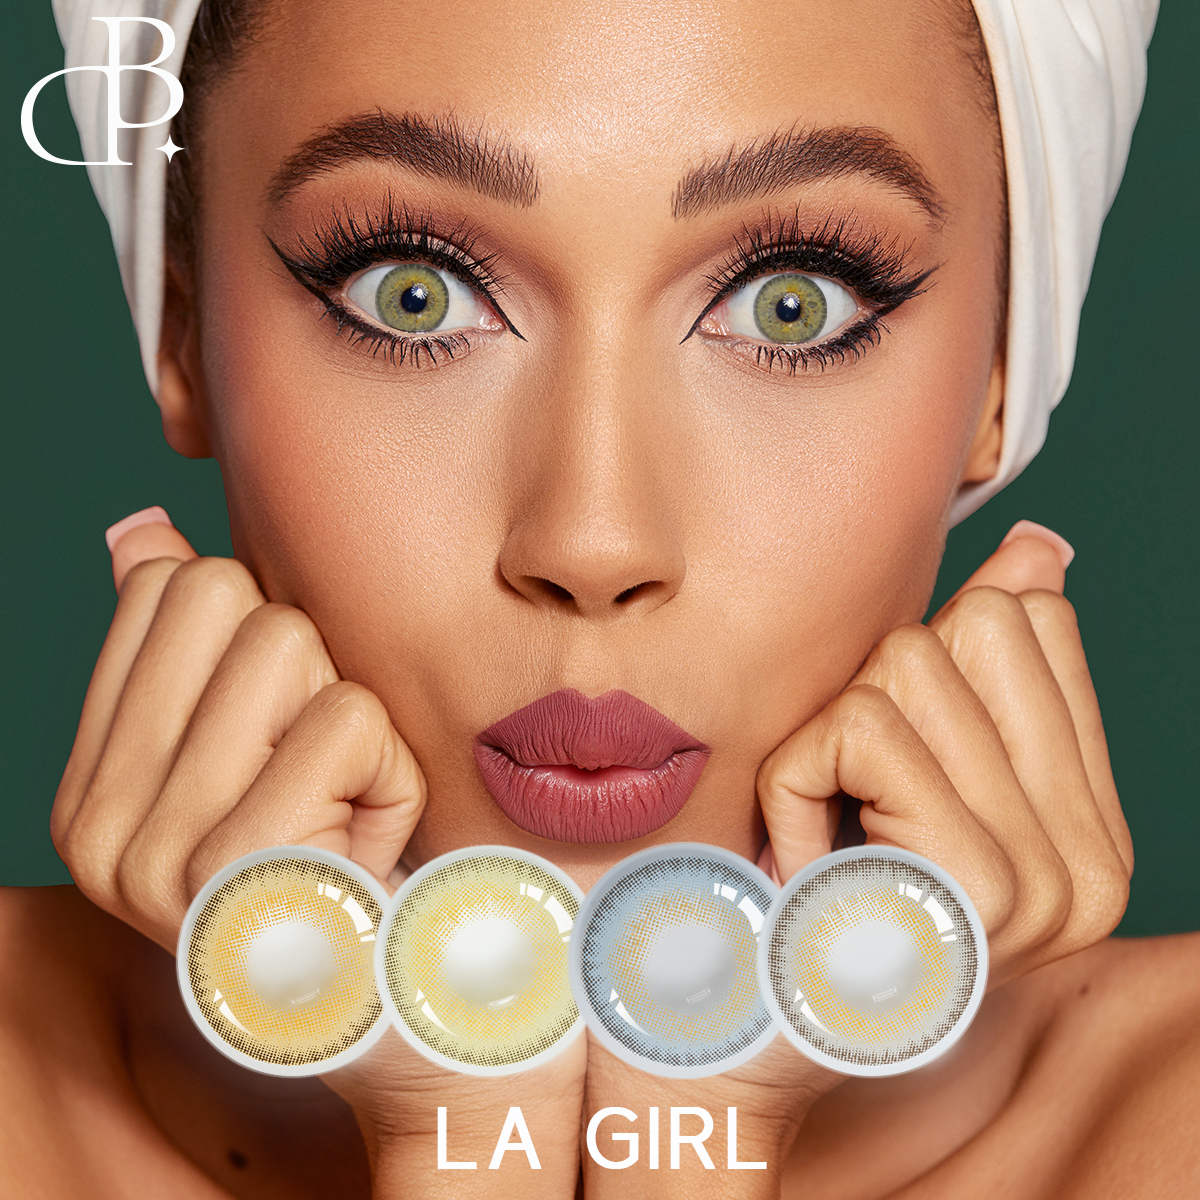 LA GIRL Fashion Hot Style vairumtirdzniecība krāsainas kontaktlēcas, pielāgotas privātas etiķetes lēti, lai iegūtu siltu uzslavu no klientiem